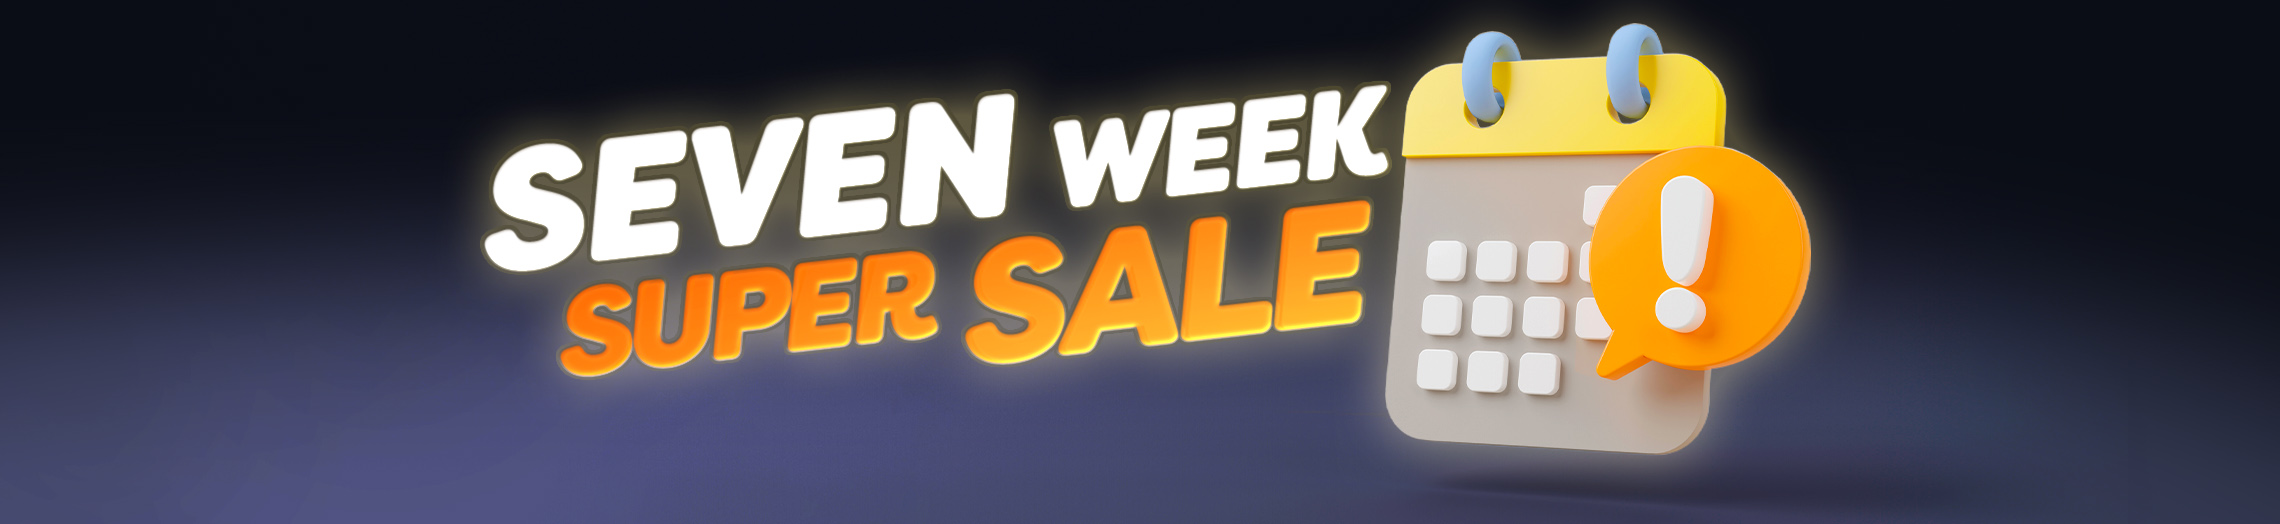 7 week super sale! Week 3!